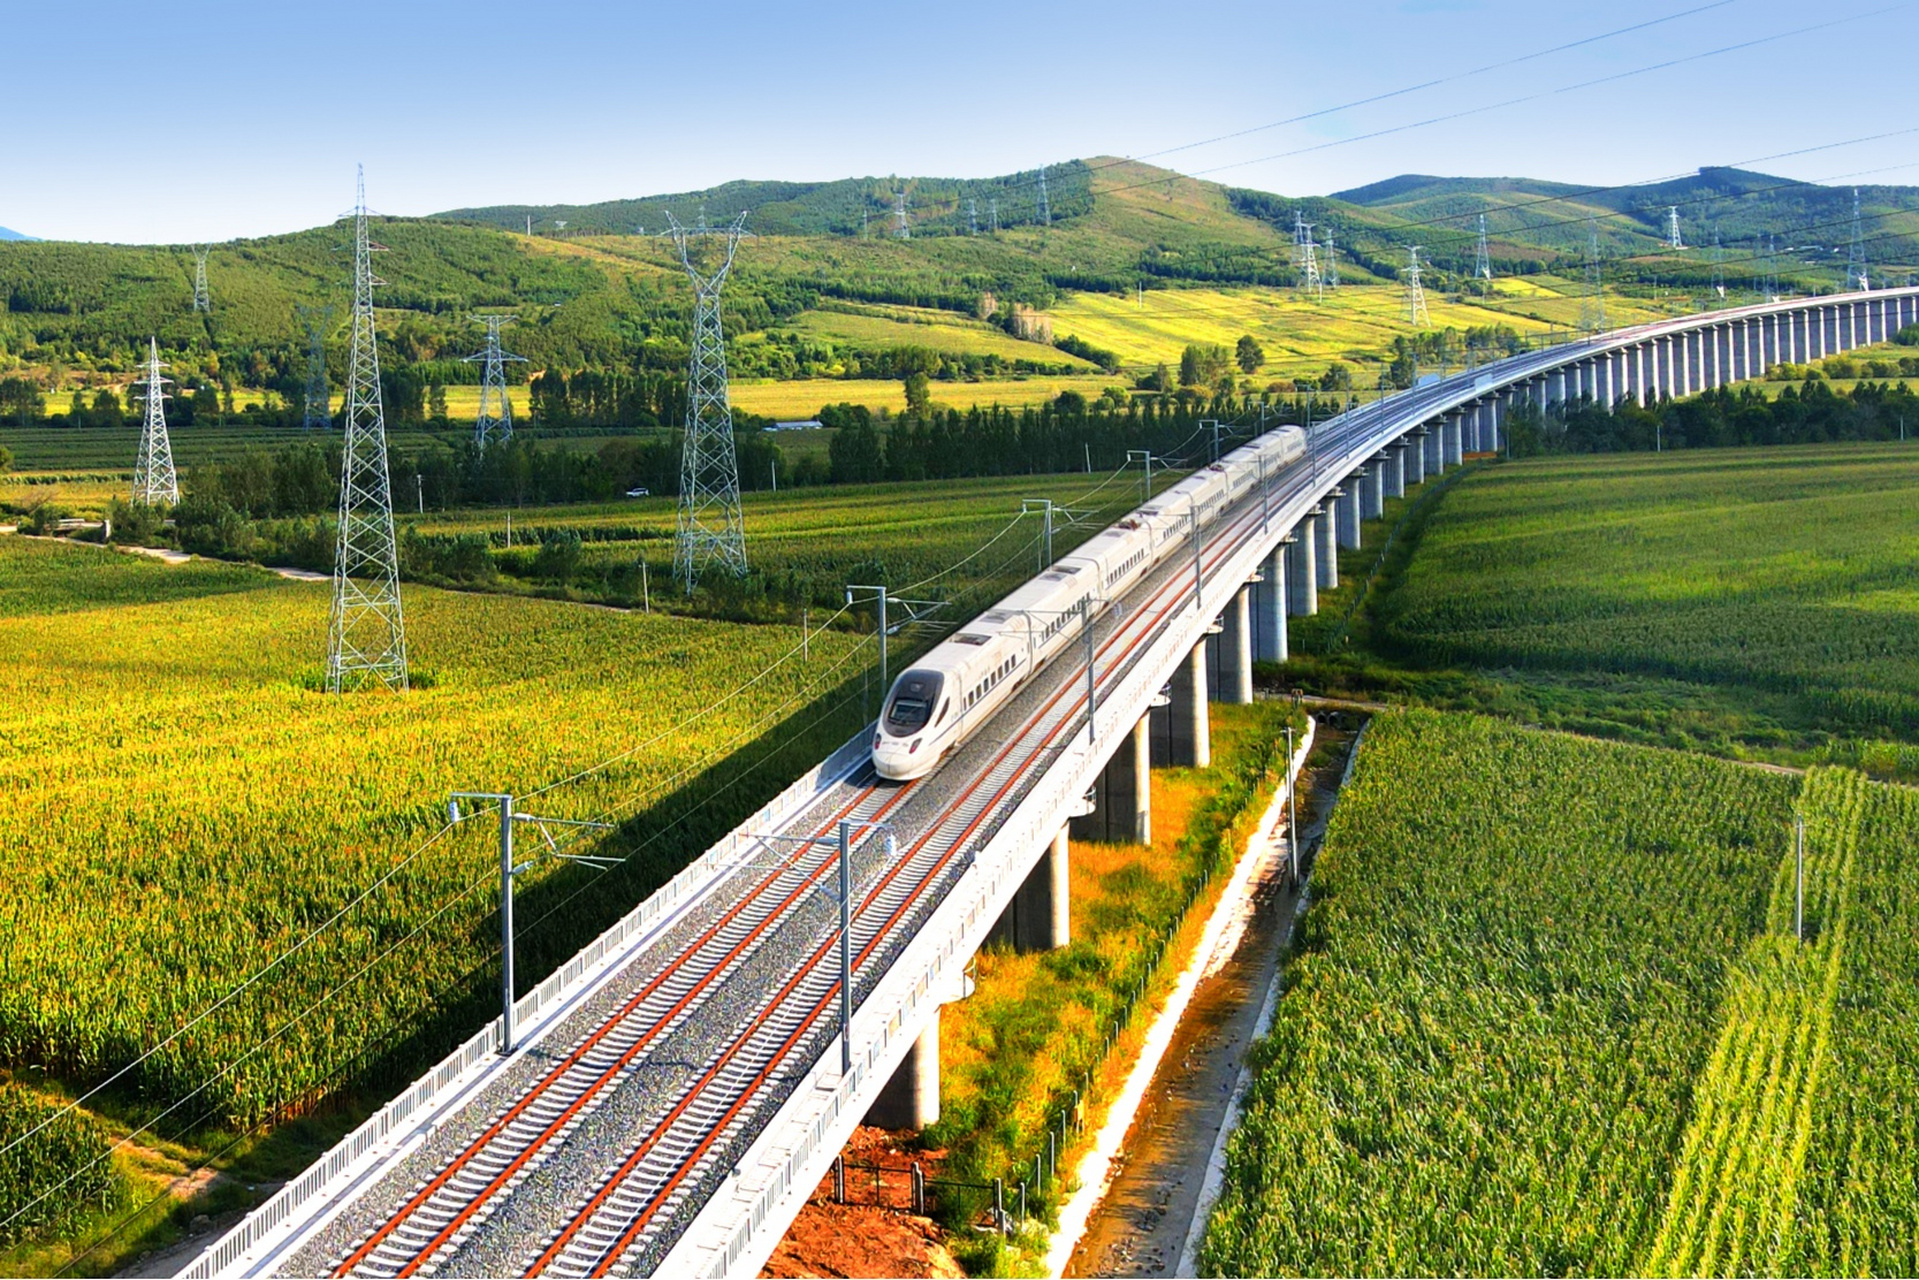 高速铁路:中国是世界上最大的高速铁路运营国家,拥有世界上最大的